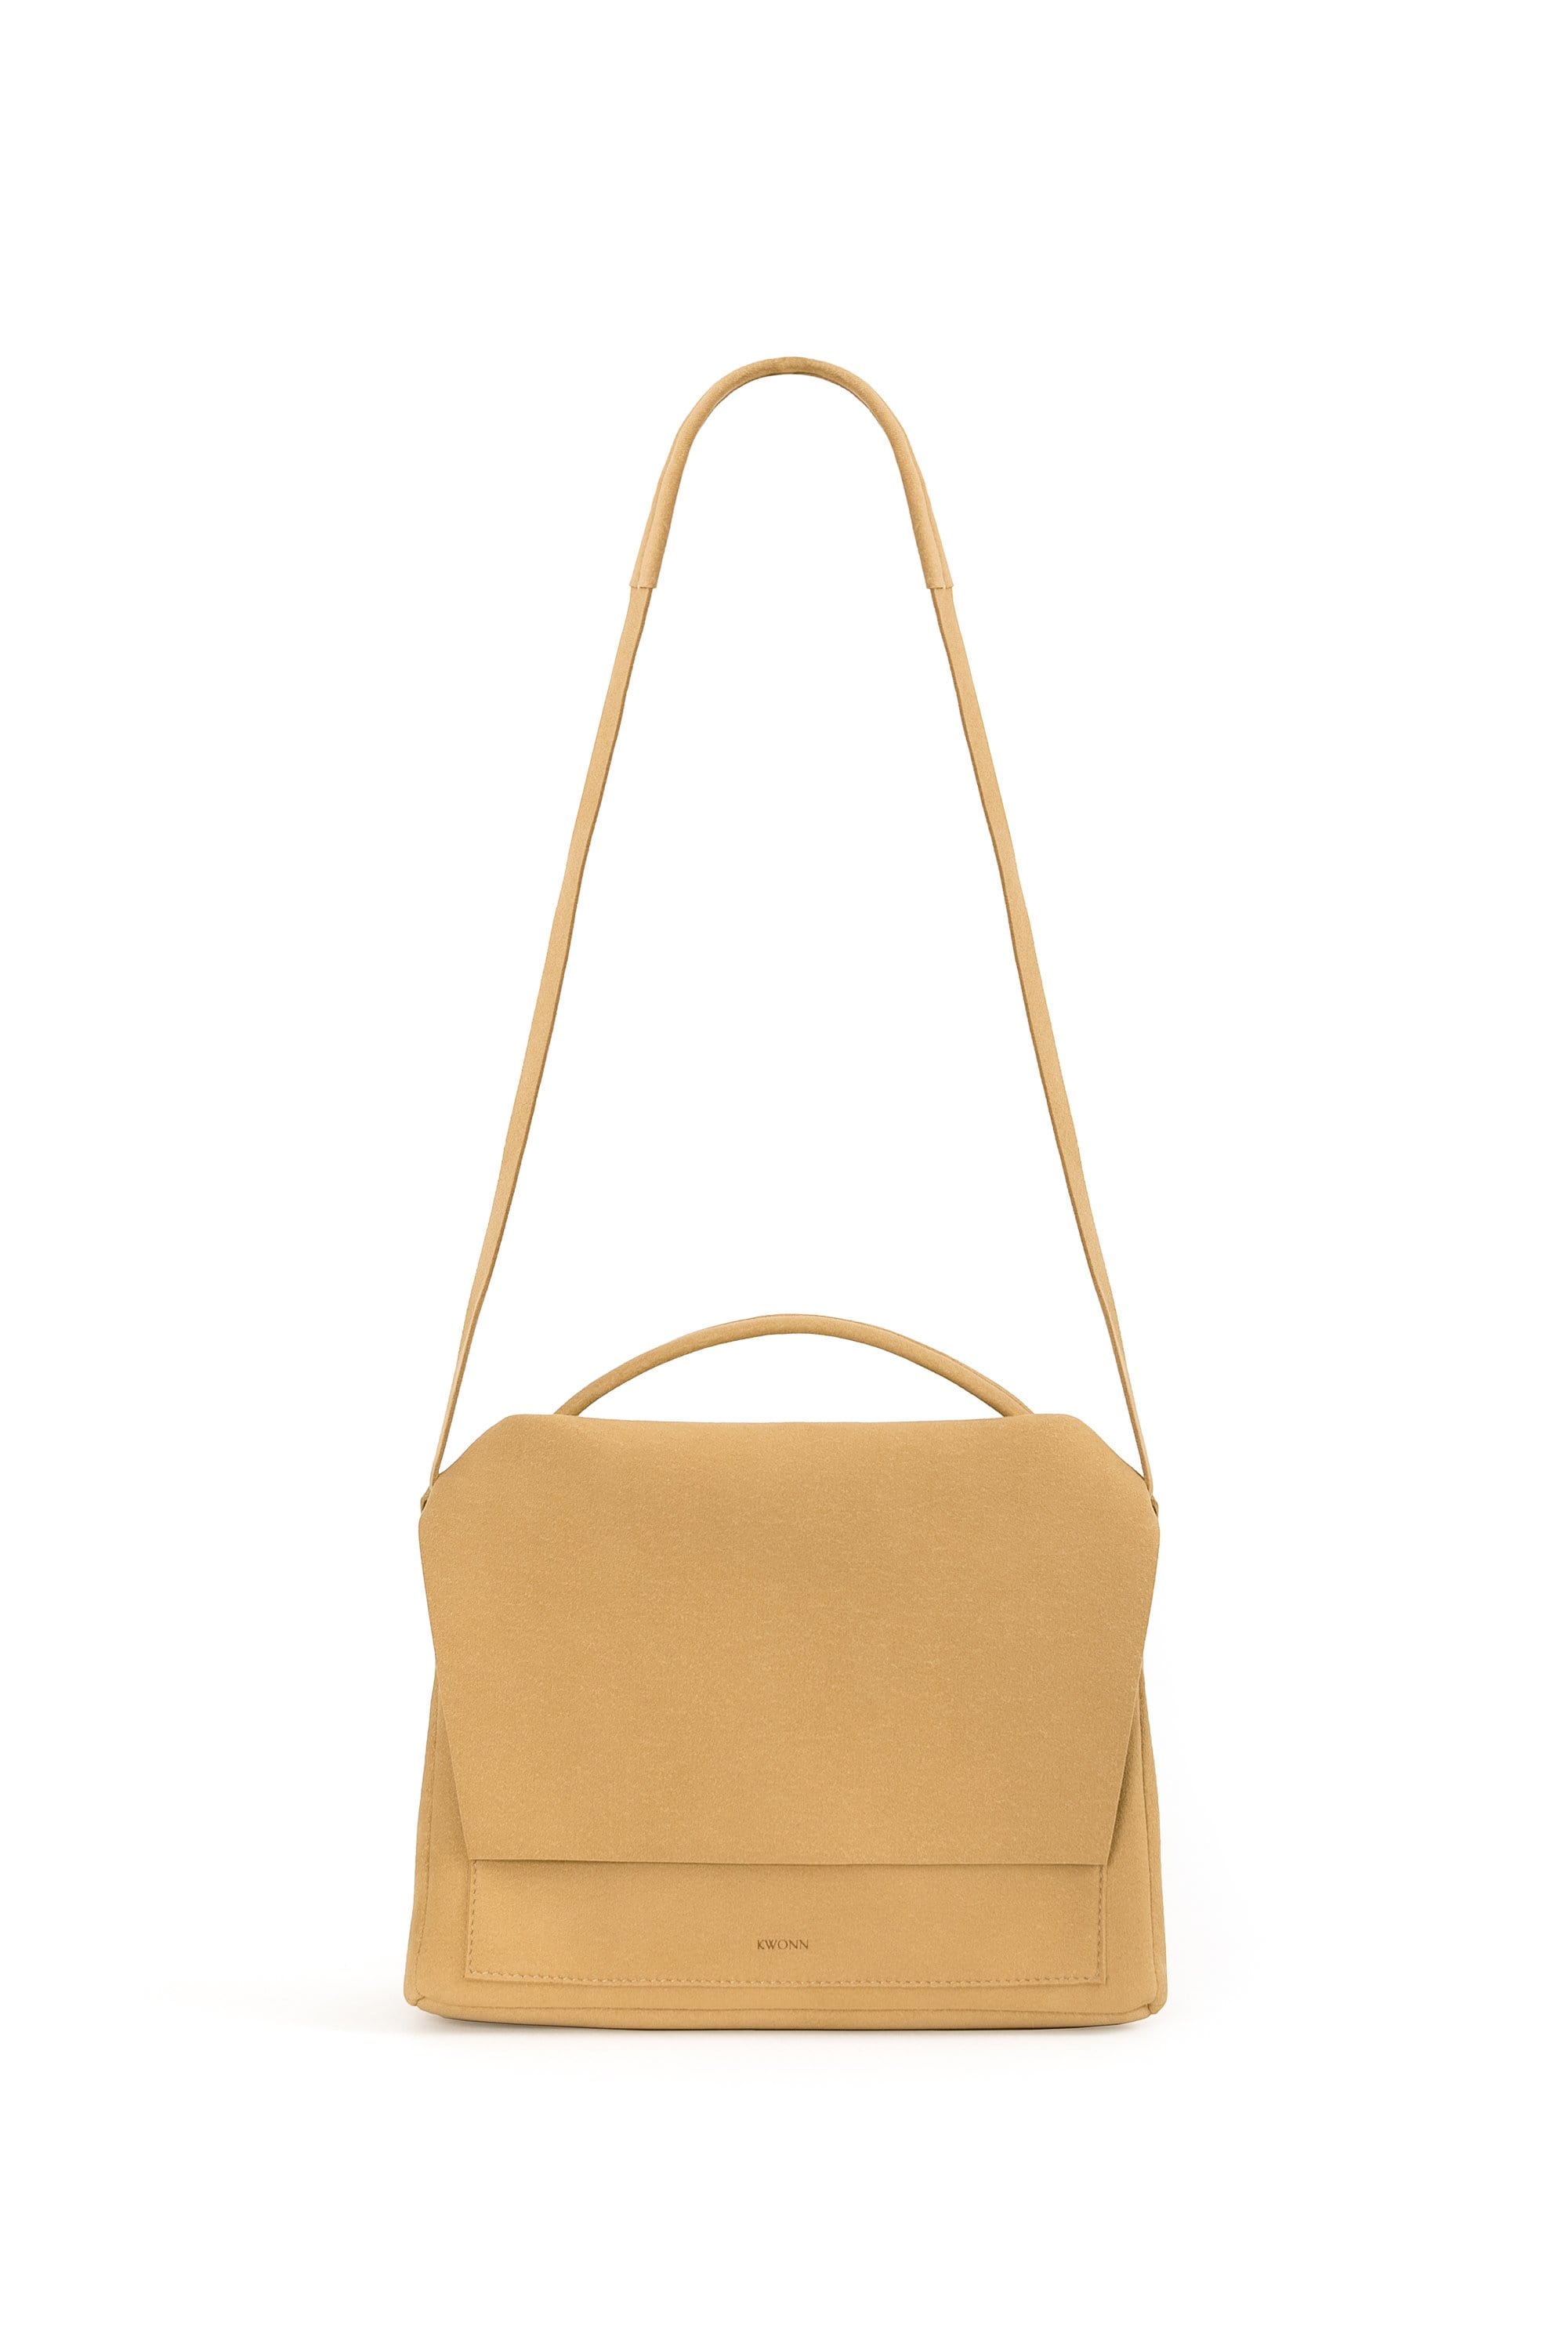 KWONN BAG Camel Crossbody vegan bags luxury bags handbags